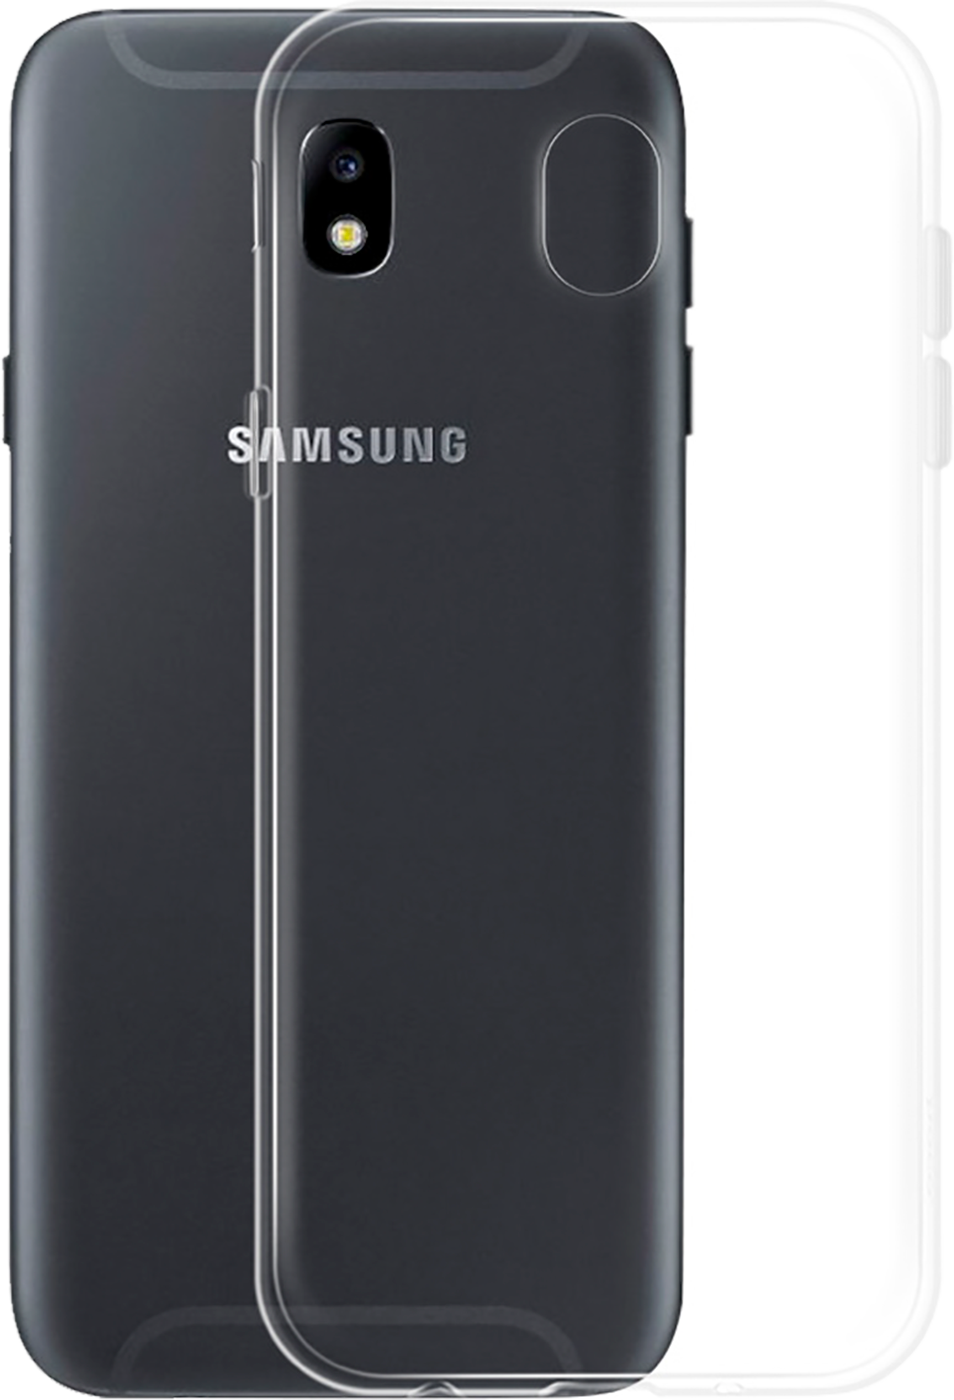 Navlaka za mobitel Samsung J3, transparent